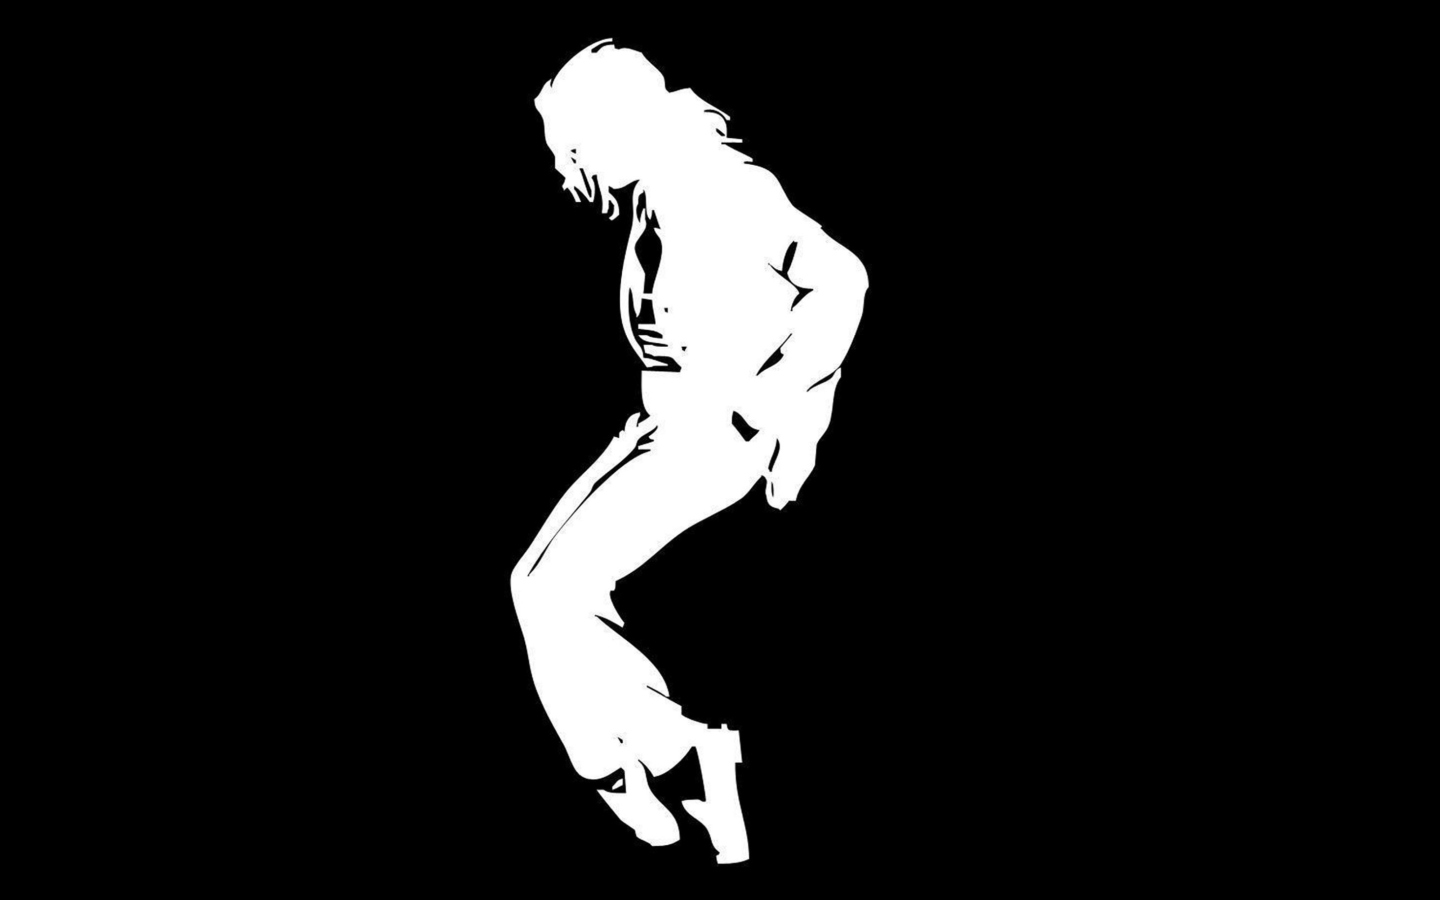 Michael Jackson wallpaper 1440x900